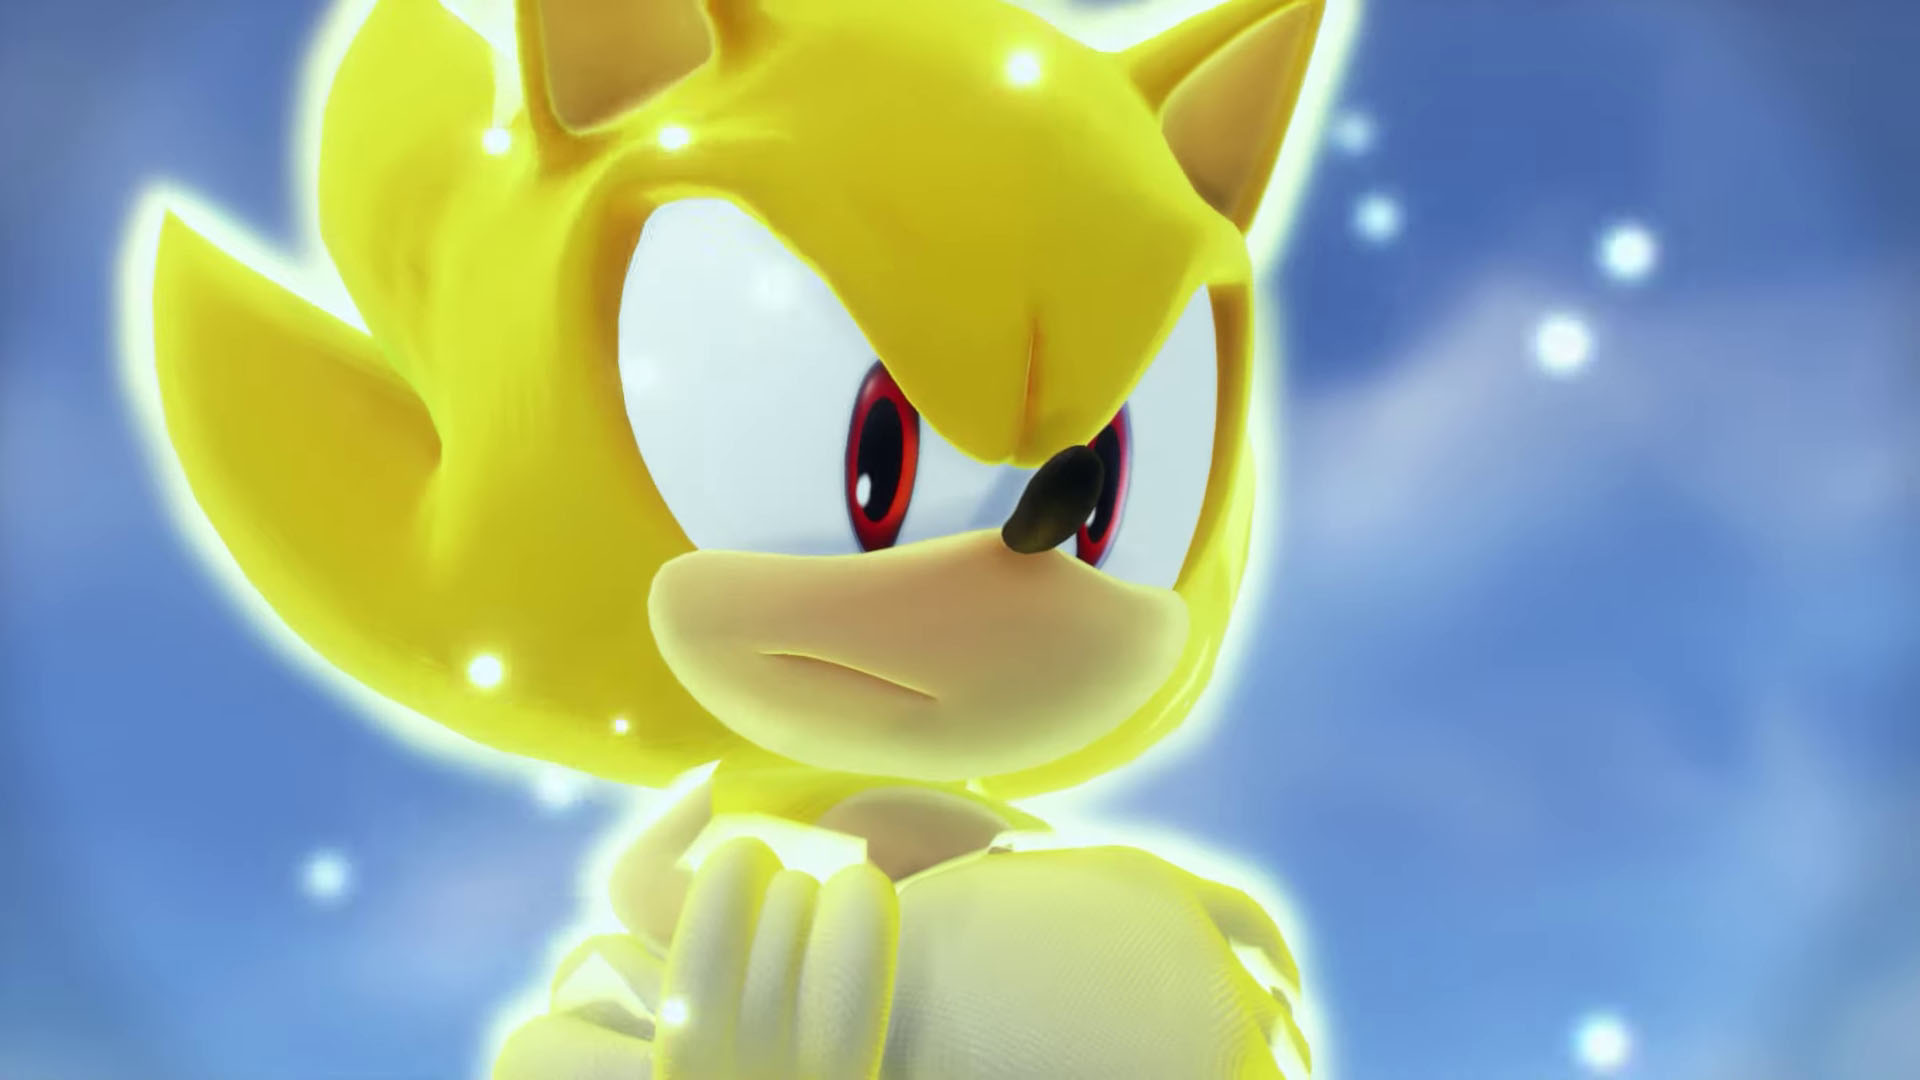 Sonic Frontiers: trailer da TGS 2022 mostra Super Sonic